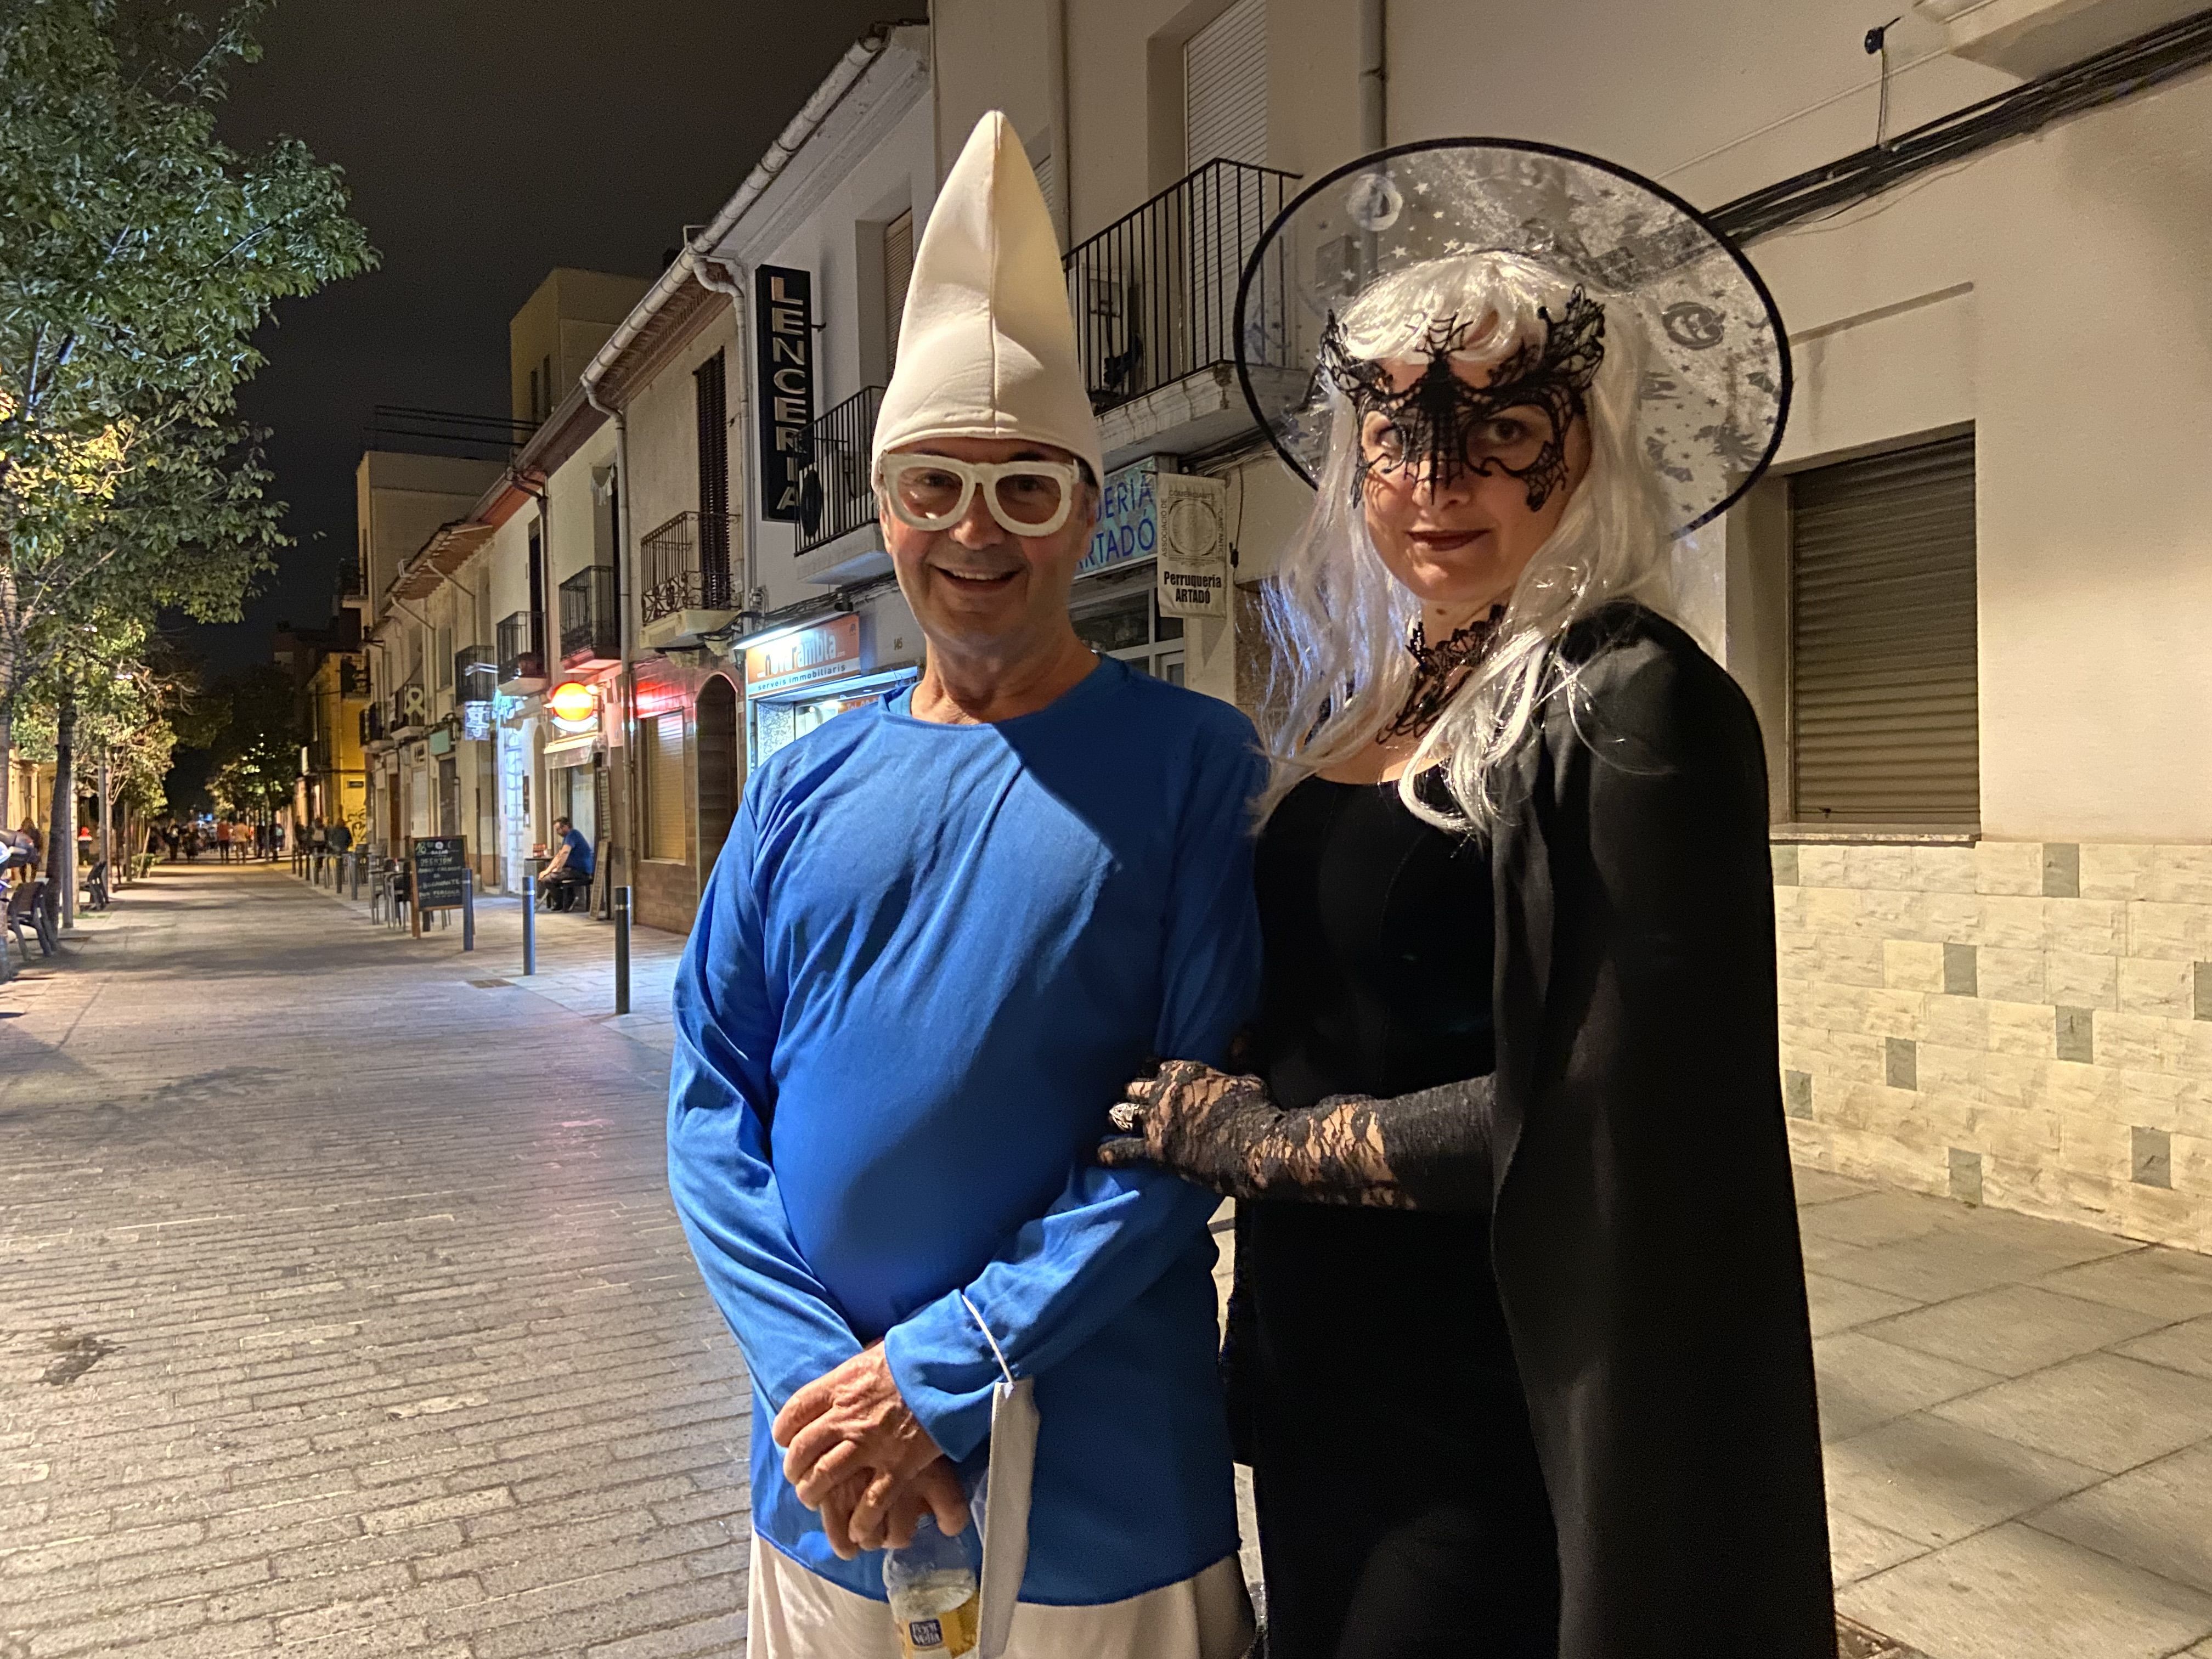 Dos veïns de Cerdanyola disfressats la nit de Halloween. FOTO: Nora Muñoz Otero